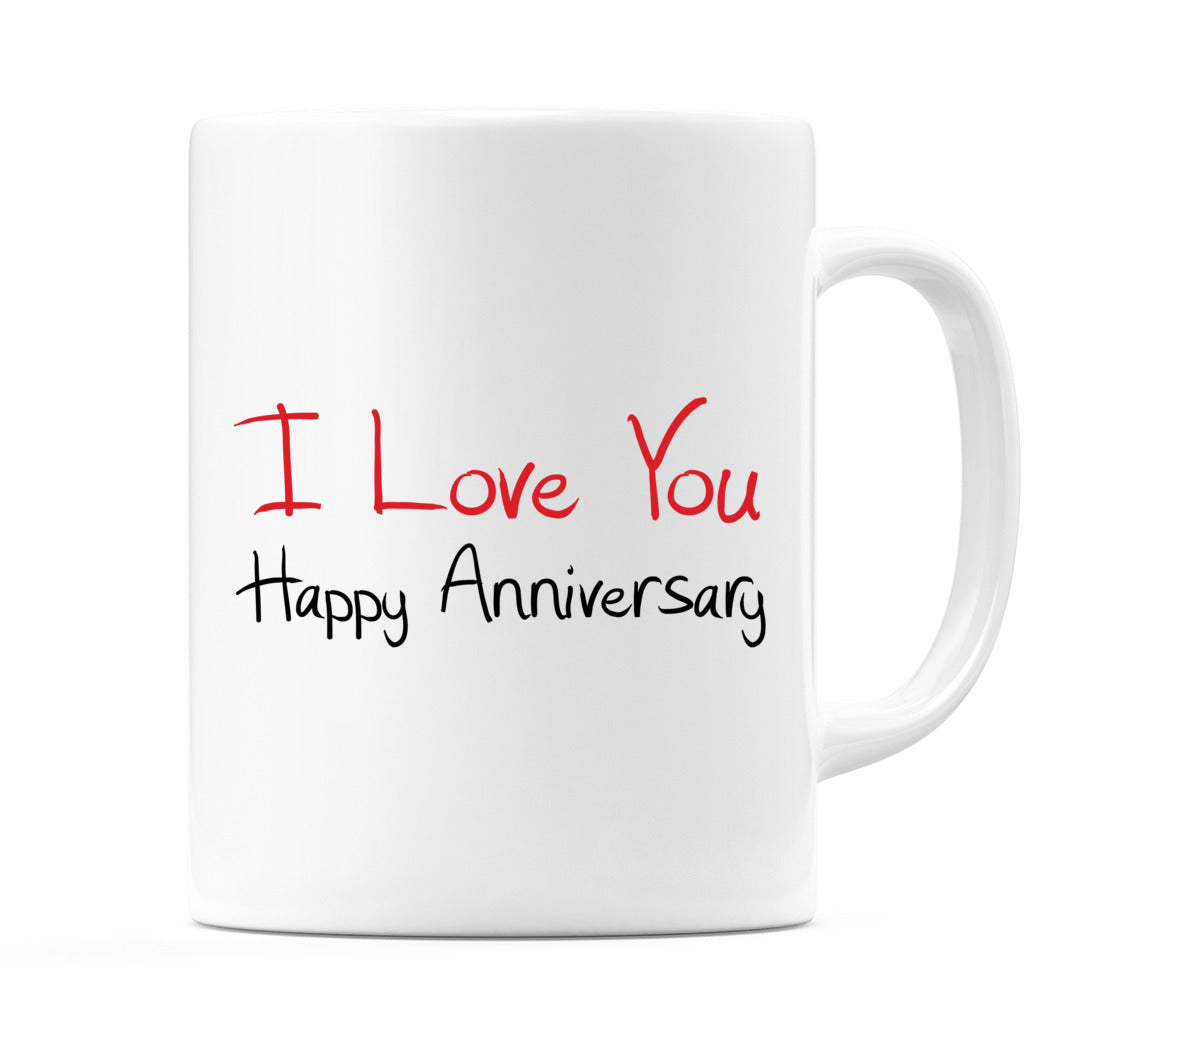 I Love You Happy Anniversary Mug